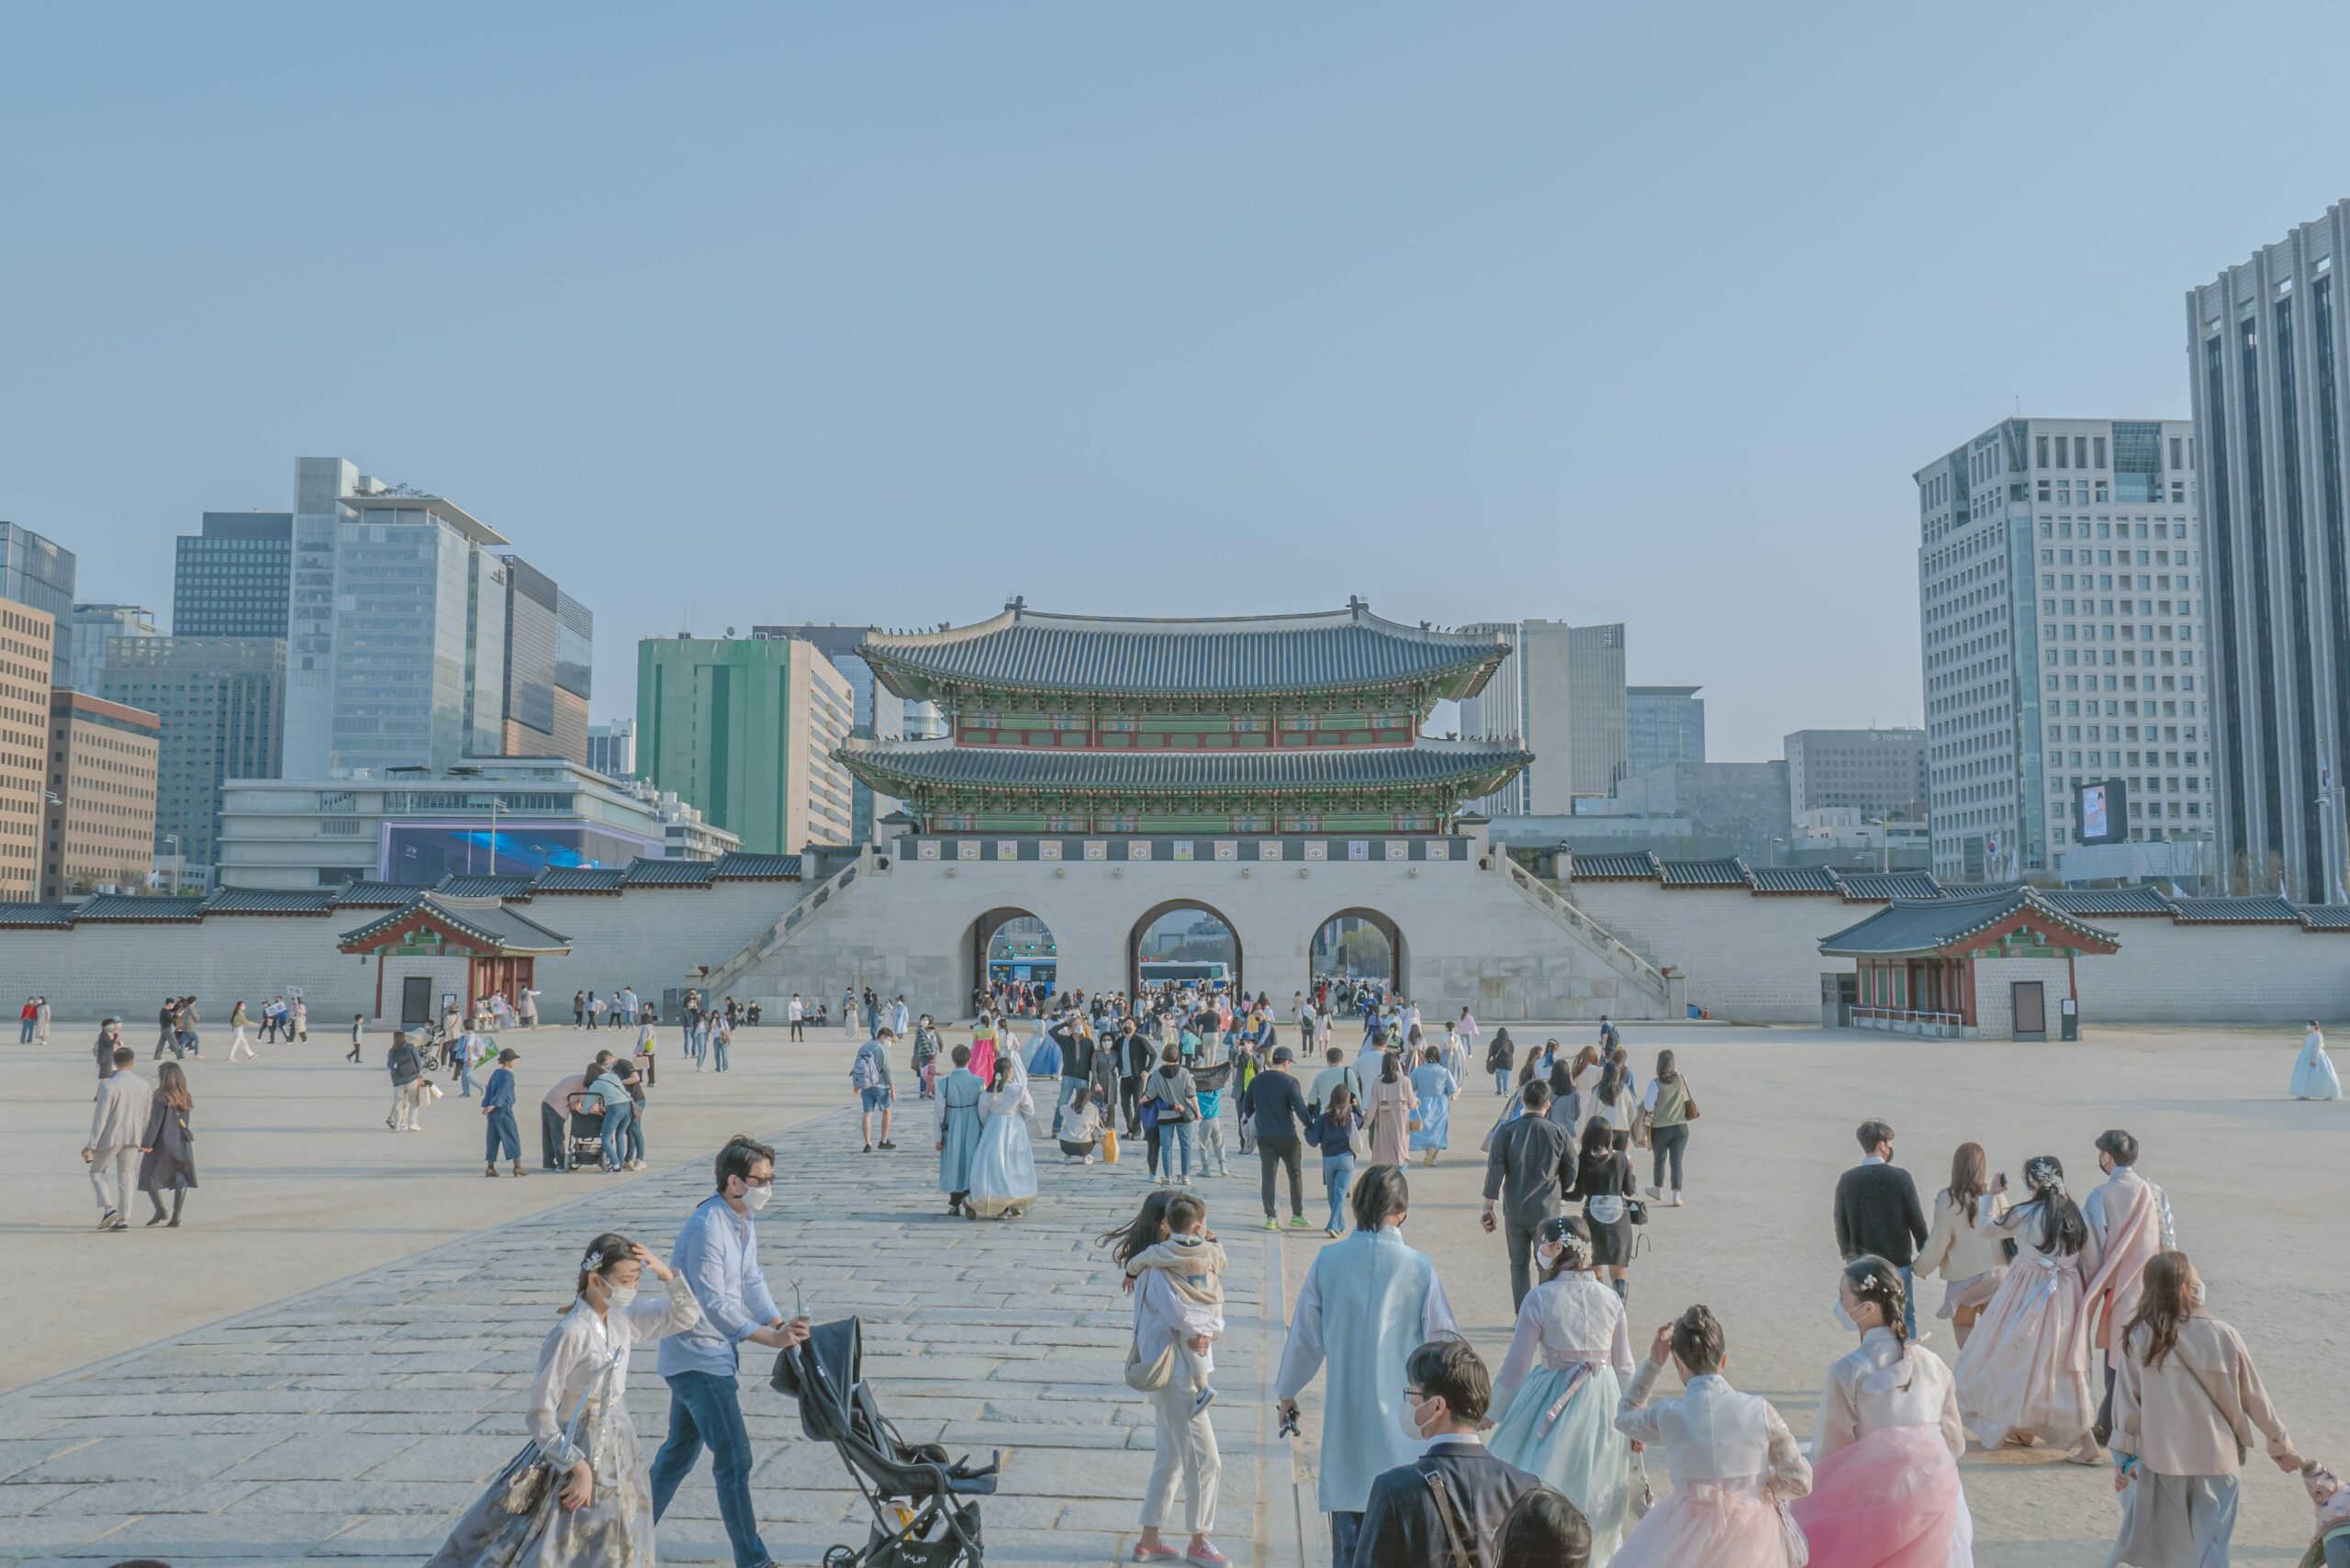 south korea workation visa - requirements for visa application